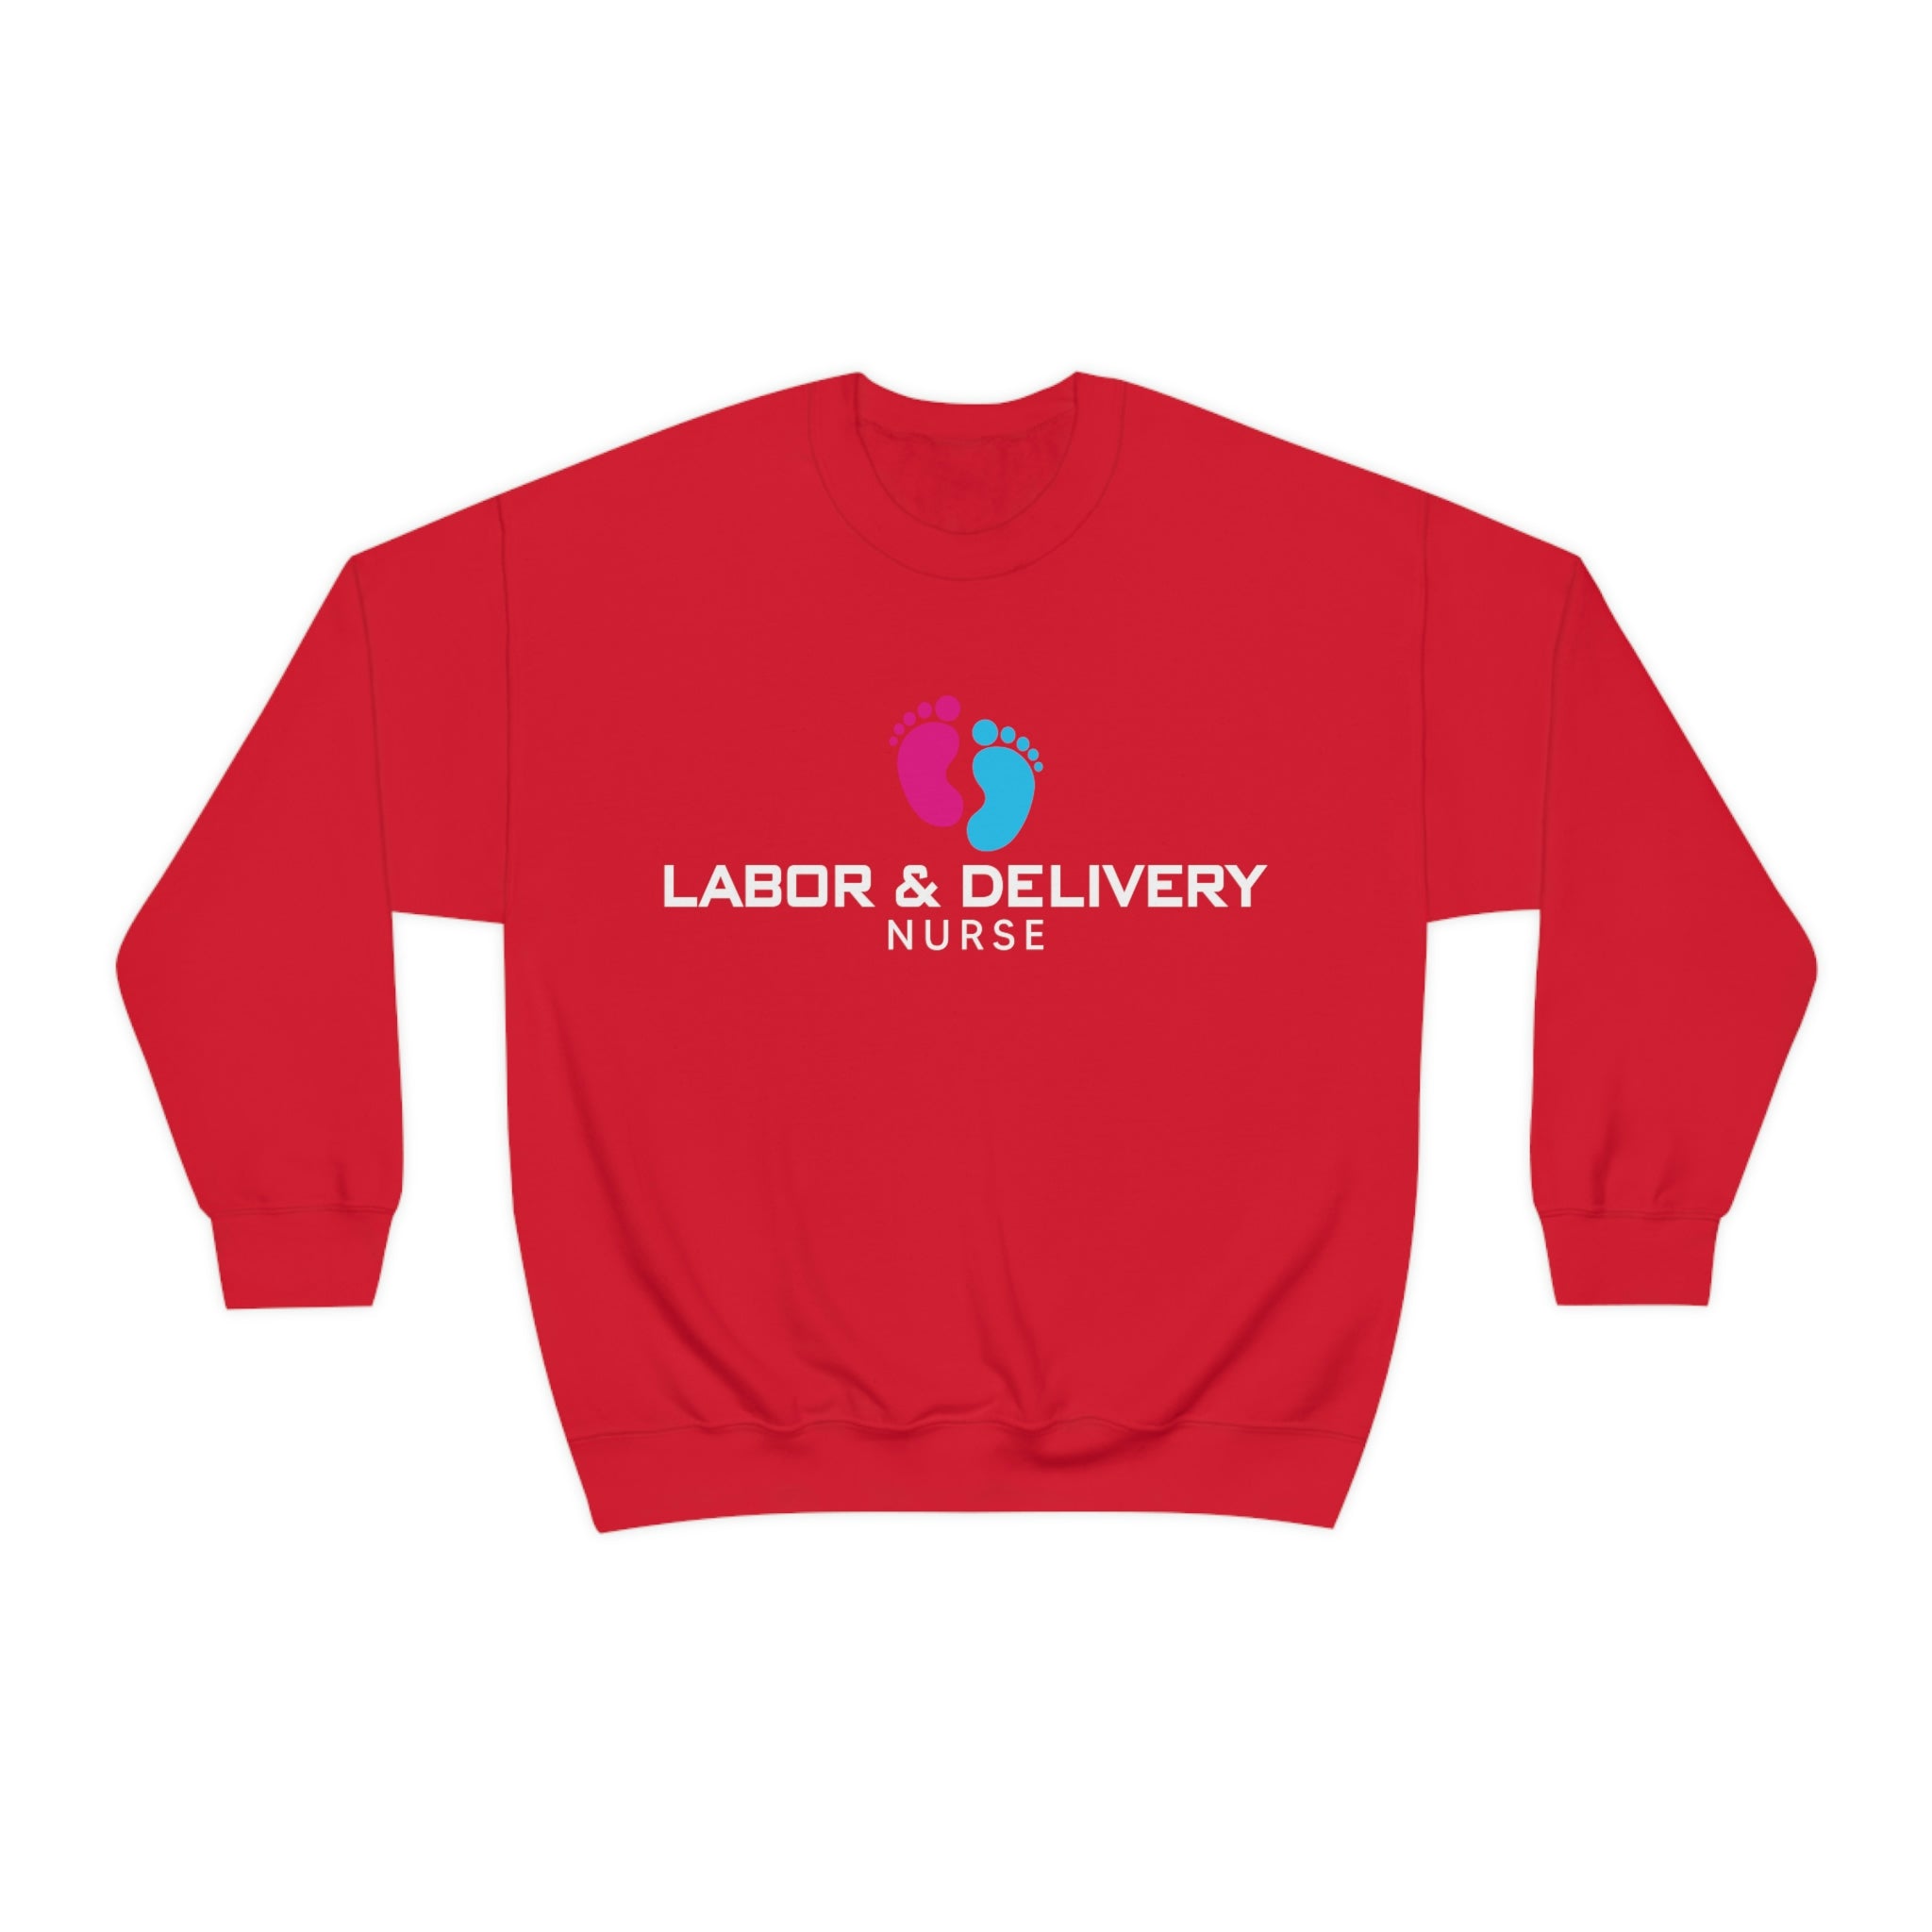 Labor & Delivery Nurse (Crewneck Sweatshirt)